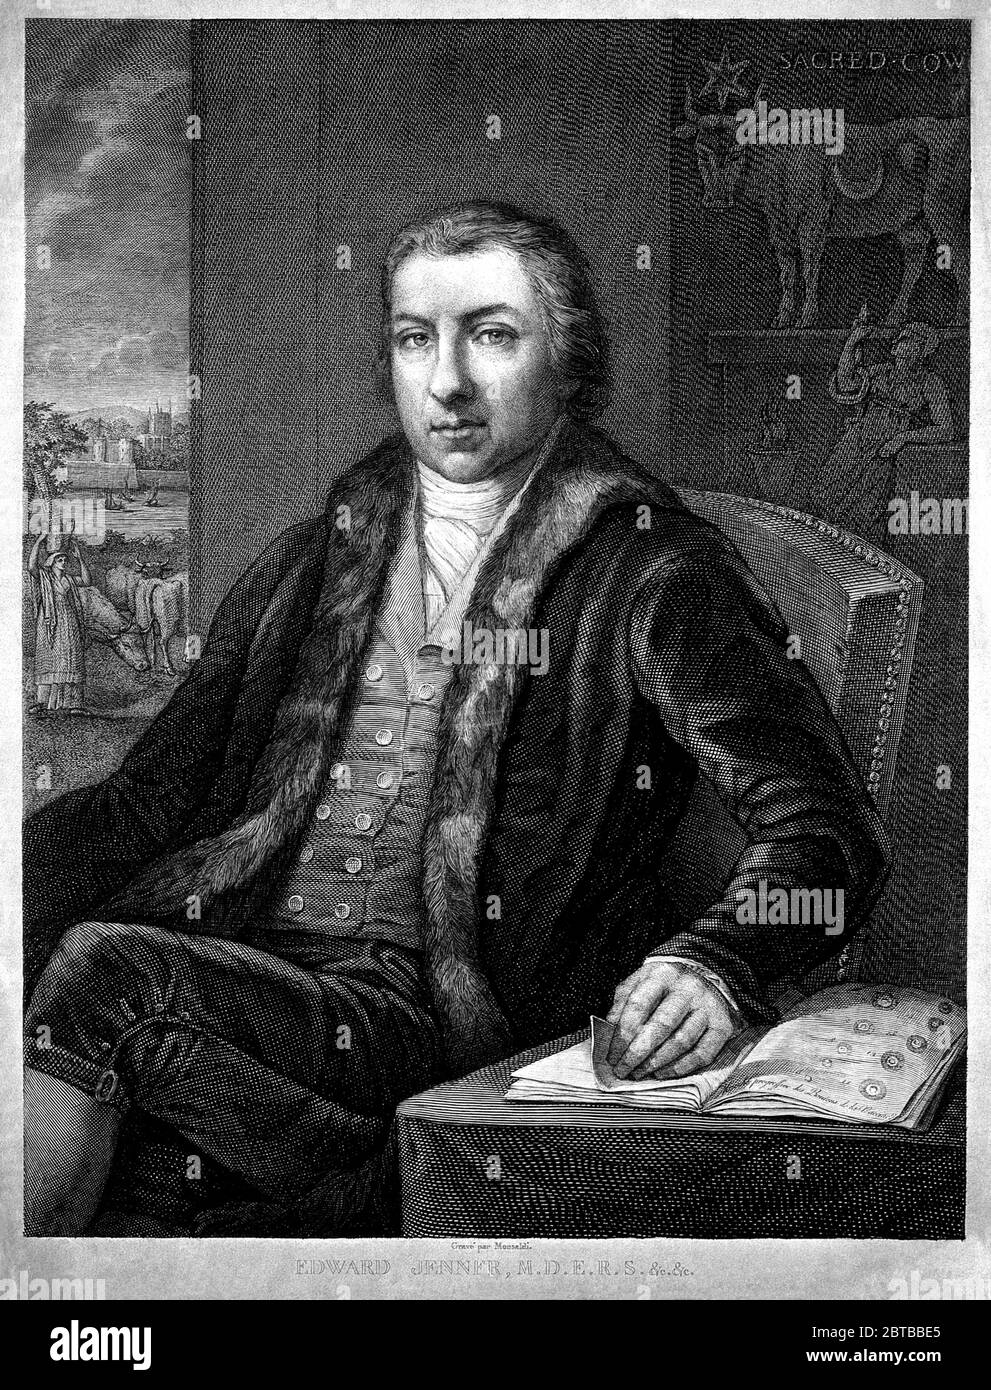 1820 ca., GROSSBRITANNIEN: Der britische Arzt, Virologe und Naturforscher EDWARD JENNER ( 1749 - 1823 ), der an der Entwicklung des POCKENIMPFES mitwirkte. Porträt von A.M. Monsaldi nach J. Northcote und John Raphael Smith . - IMPFUNG - VIRUS - VIROLOGO - VIROLOGE - ANTIVAIOLOSA - ANTIVAIOLO - ANTI-VAIOLO - ANTIVAIOLO - VACCINAZIONE - foto storiche - scienziato - Wissenschaftler - Portrait - ritratto - GRAND BRETAGNA - DOTTORE - MEDICO - MEDICINA - Medizin - SCIENTIZA - WISSENSCHAFT - illustrazione - Illustration --- Archivio GBB Stockfoto